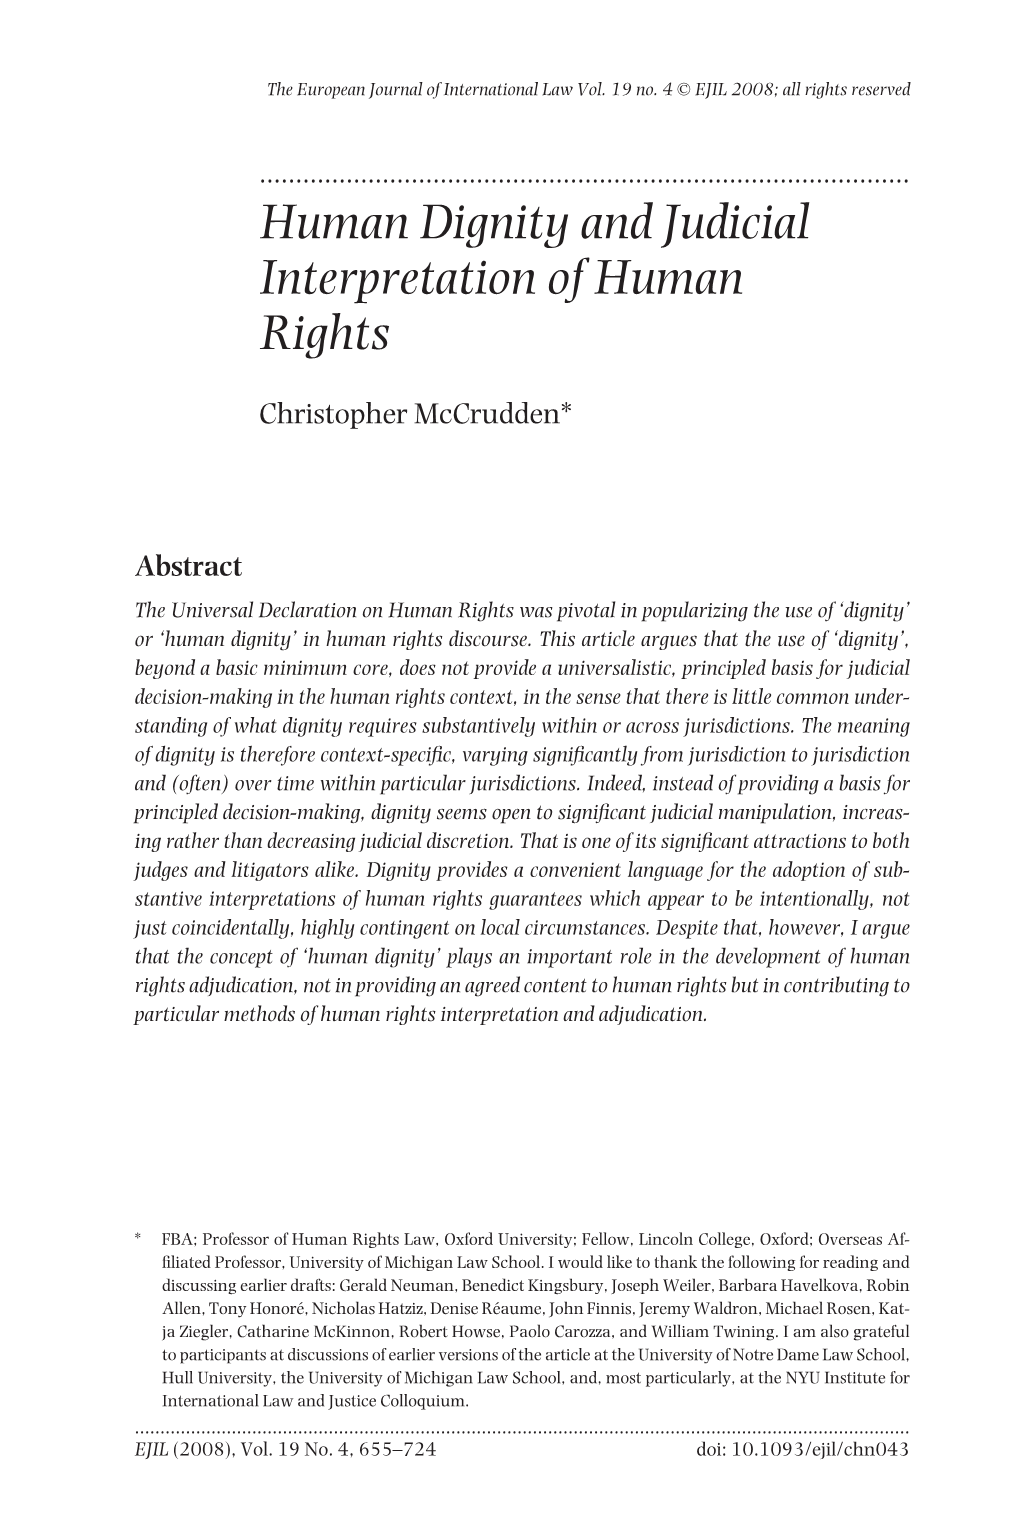 Human Dignity and Judicial Interpretation of Human Rights